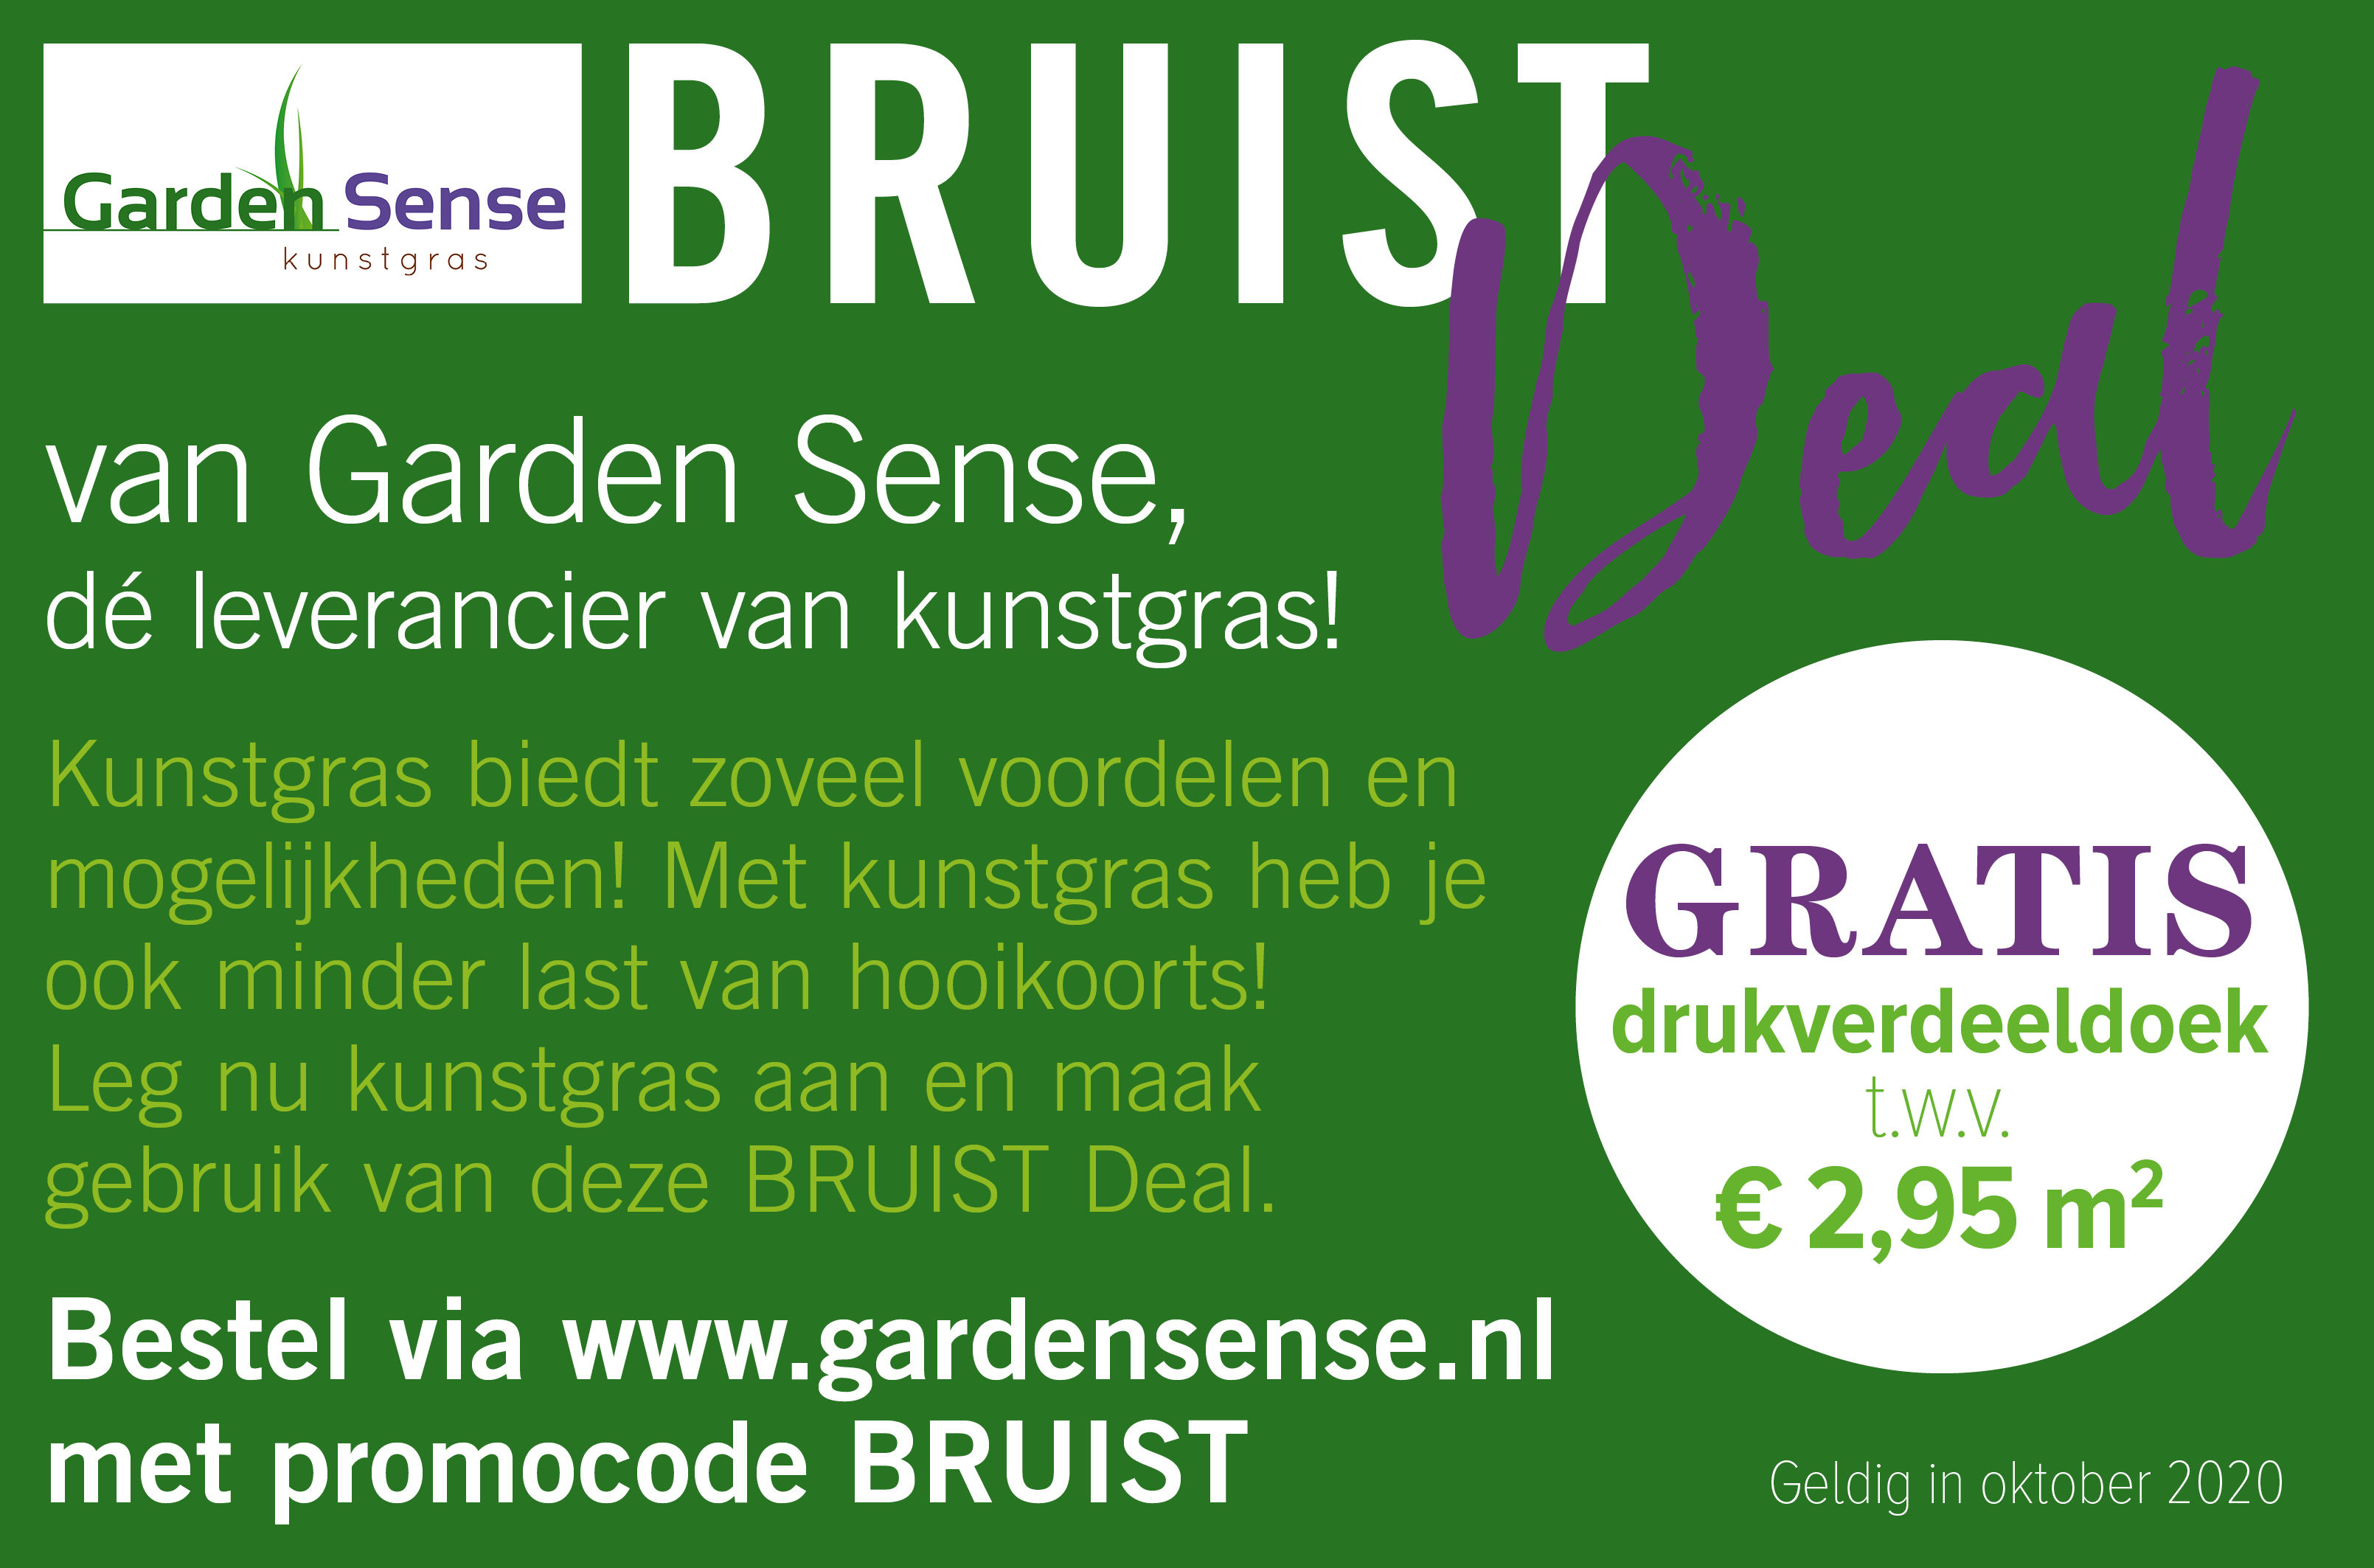 Bestel nu kunstgras bij Garden Sense met deze Bruist Deal en ontvang GRATIS drukverdeeldoek t.w.v. € 2,95 m2